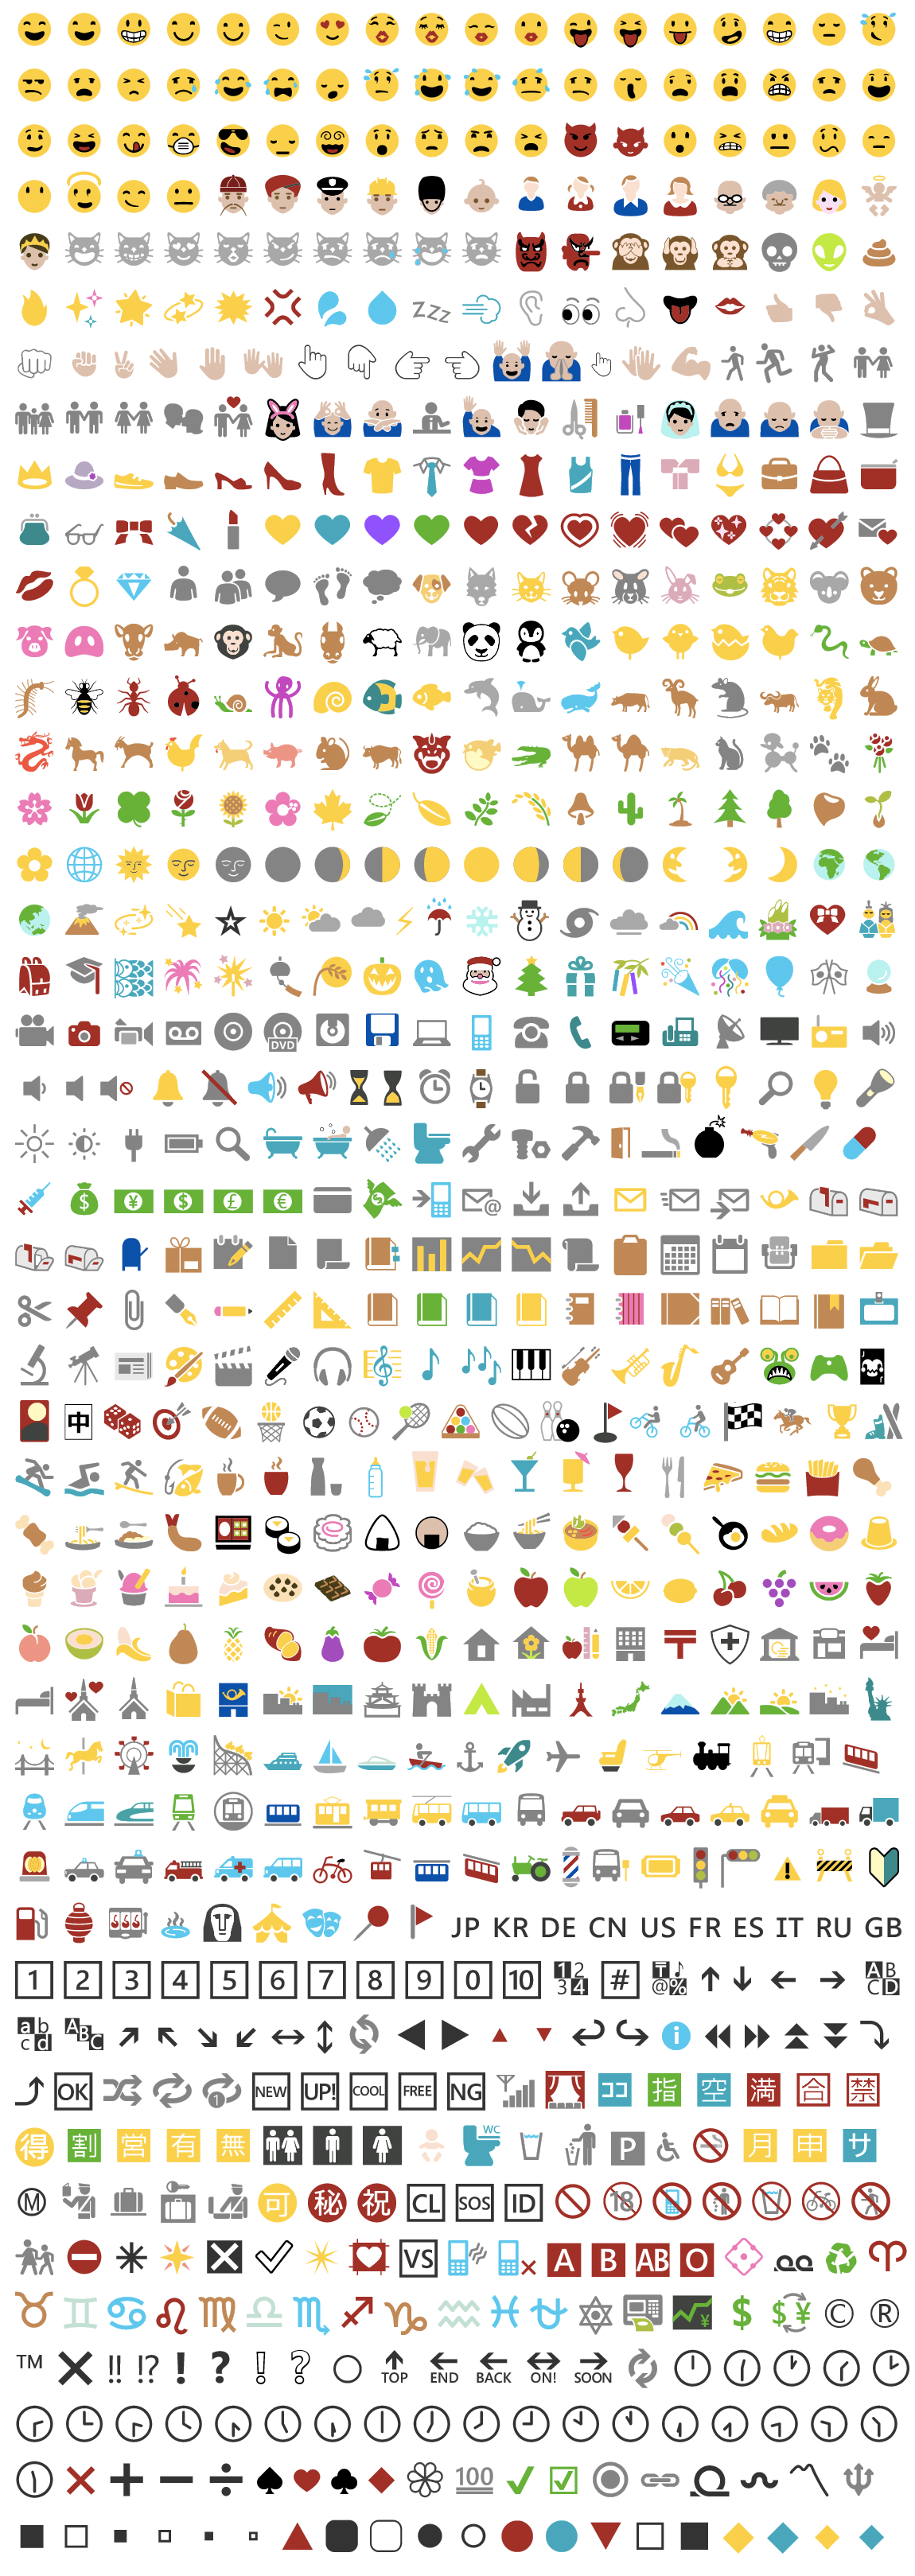 Total 54+ imagen emojis de pc - Viaterra.mx